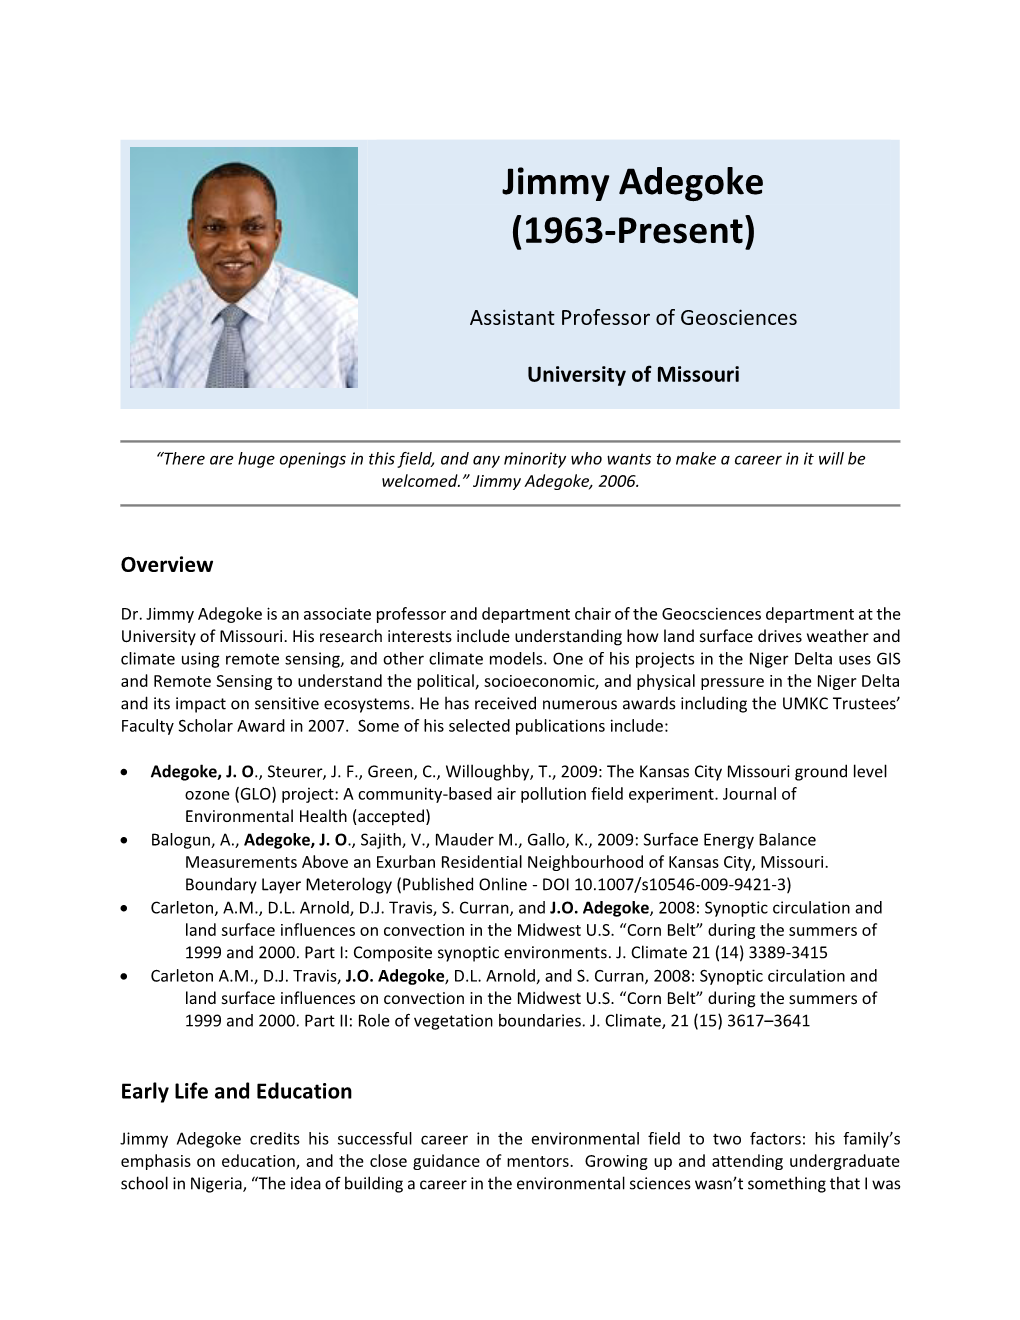 Jimmy Adegoke (1963-Present)